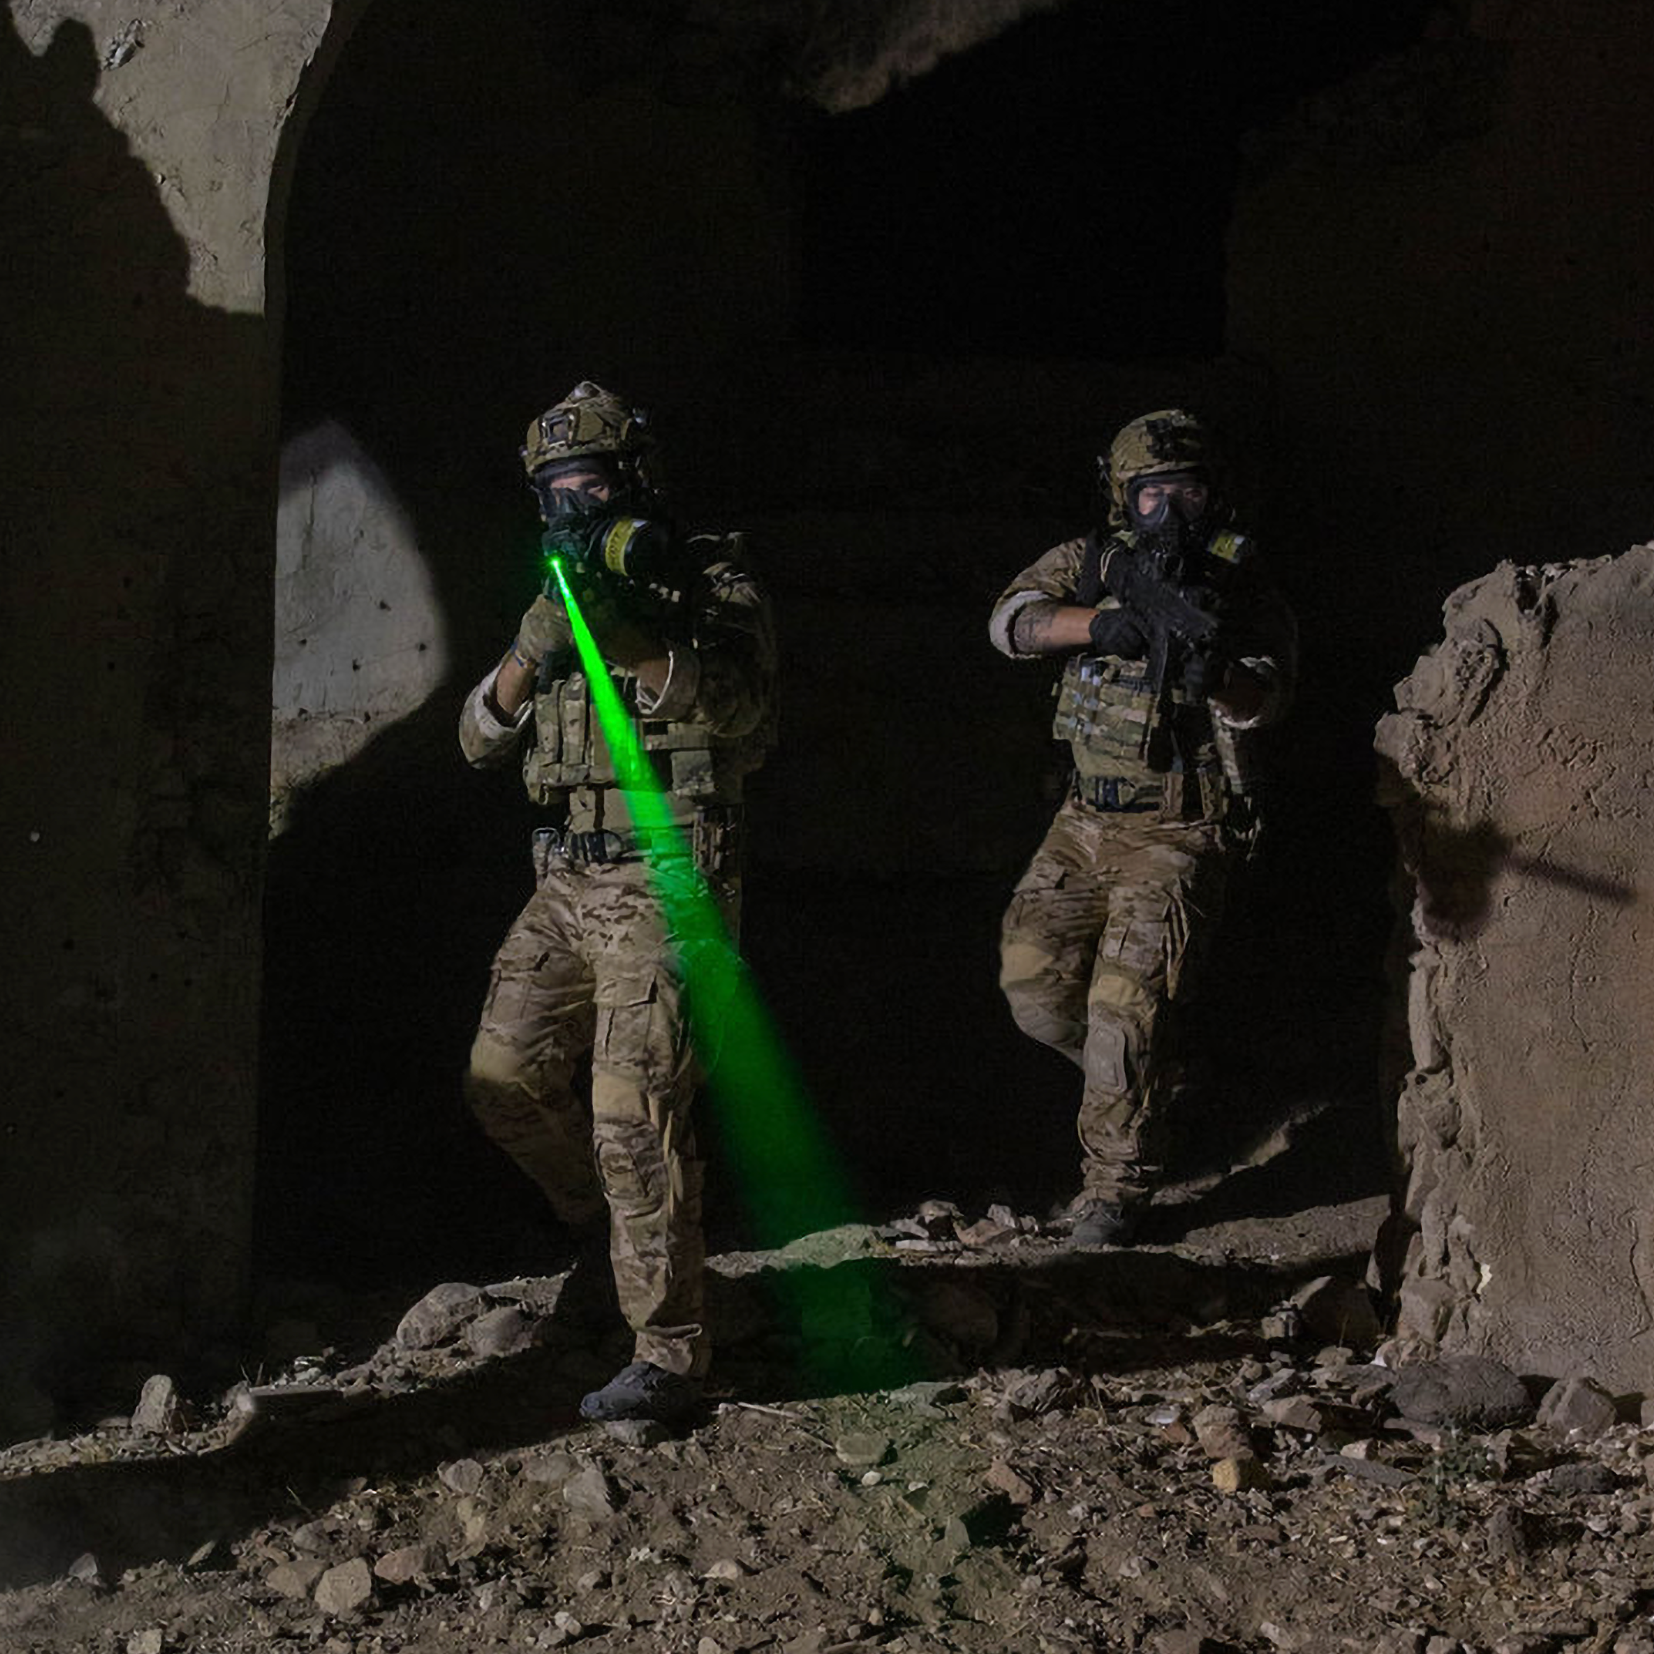 Laser Safety on a Tactical Range